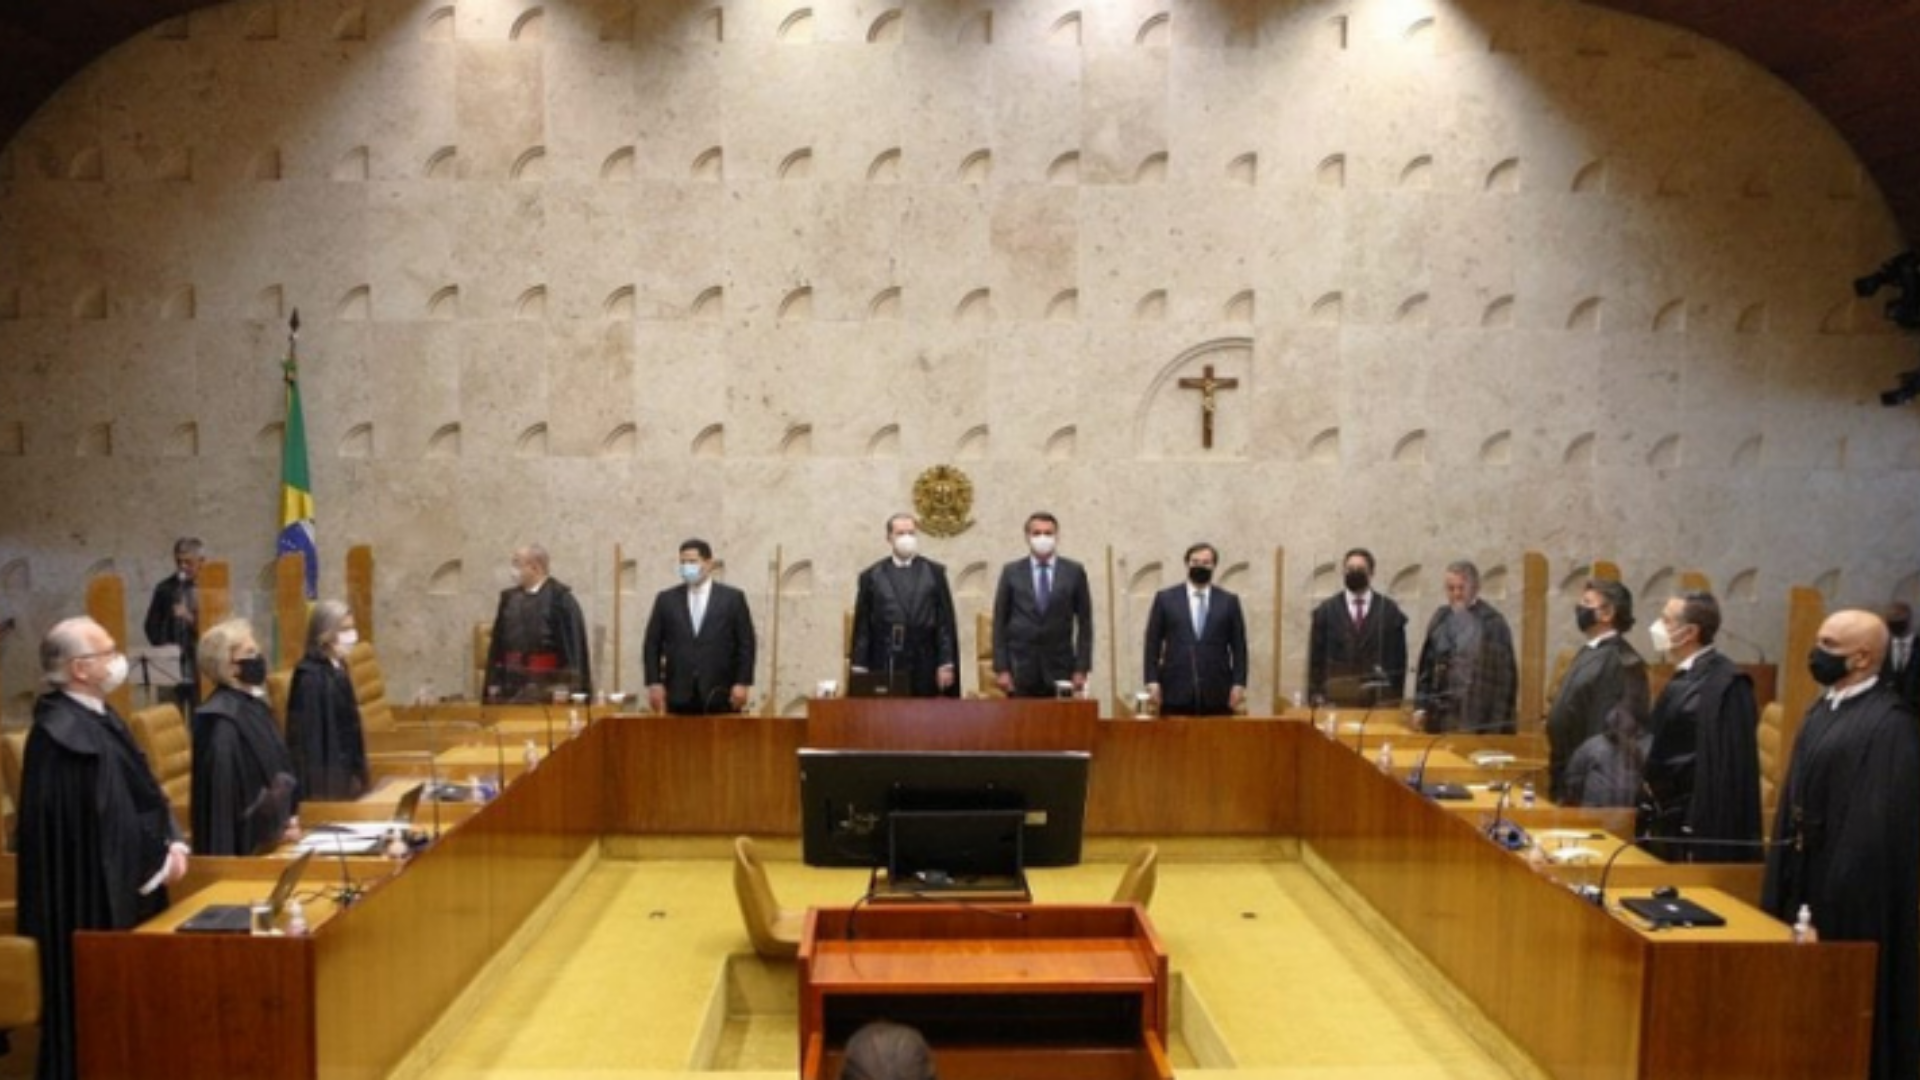 Foto do plenário do STF com todos os ministros em pé em frente às suas respectivas cadeiras.